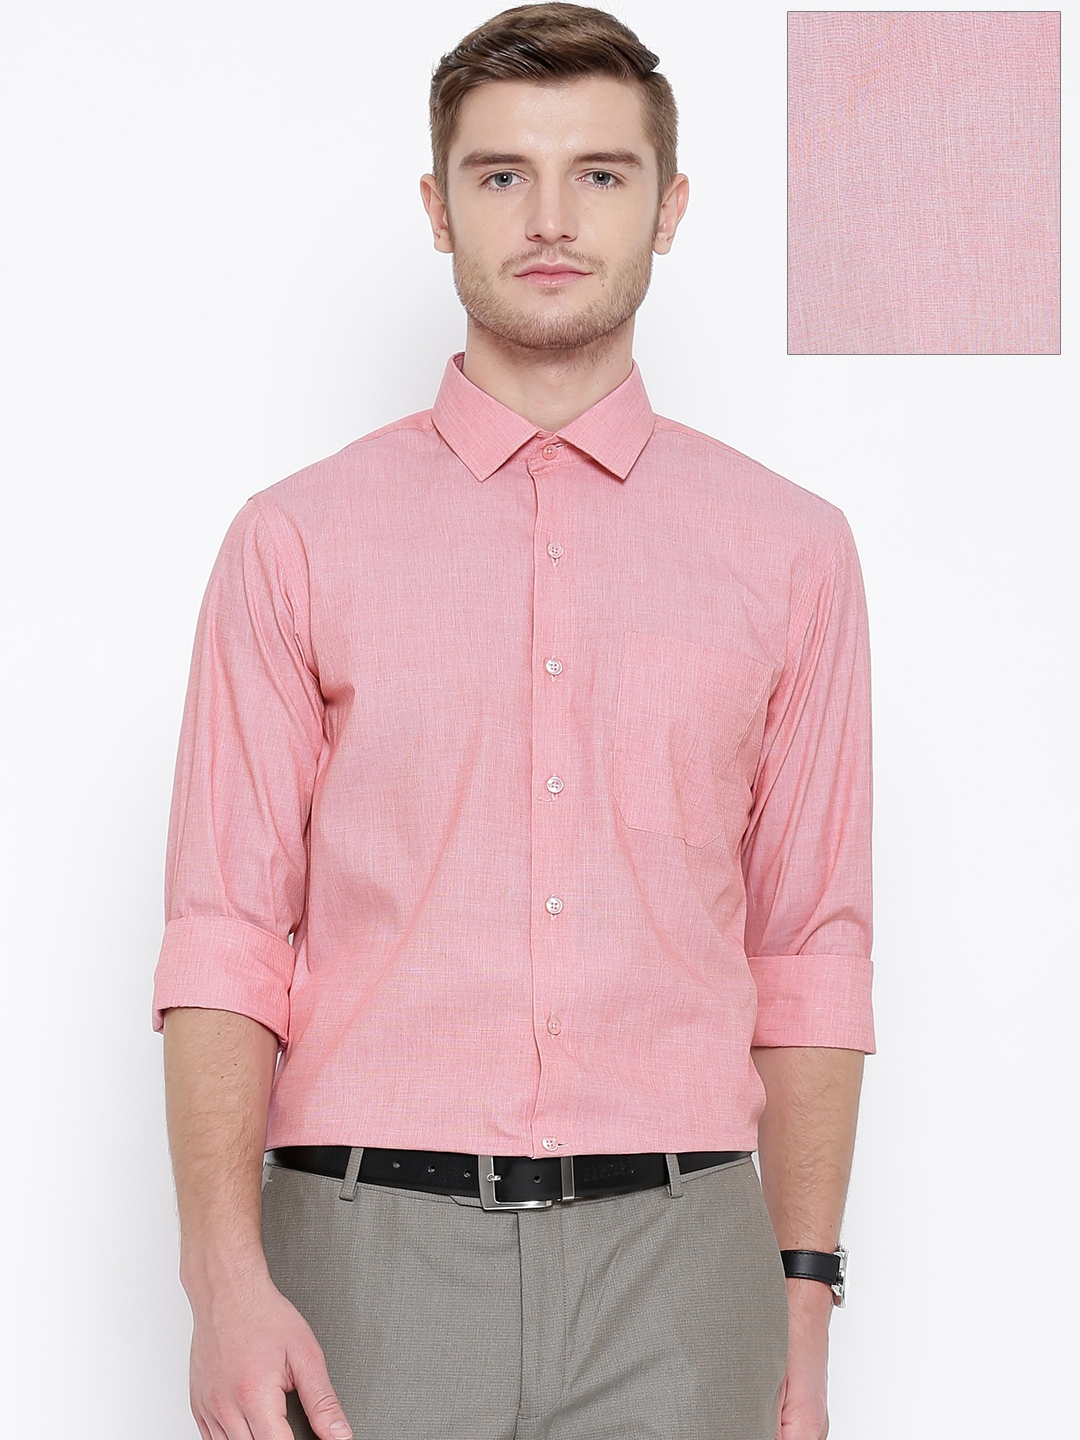 Buy Wills Lifestyle Pink Slim Formal Shirt - Shirts for Men 1350340 ...